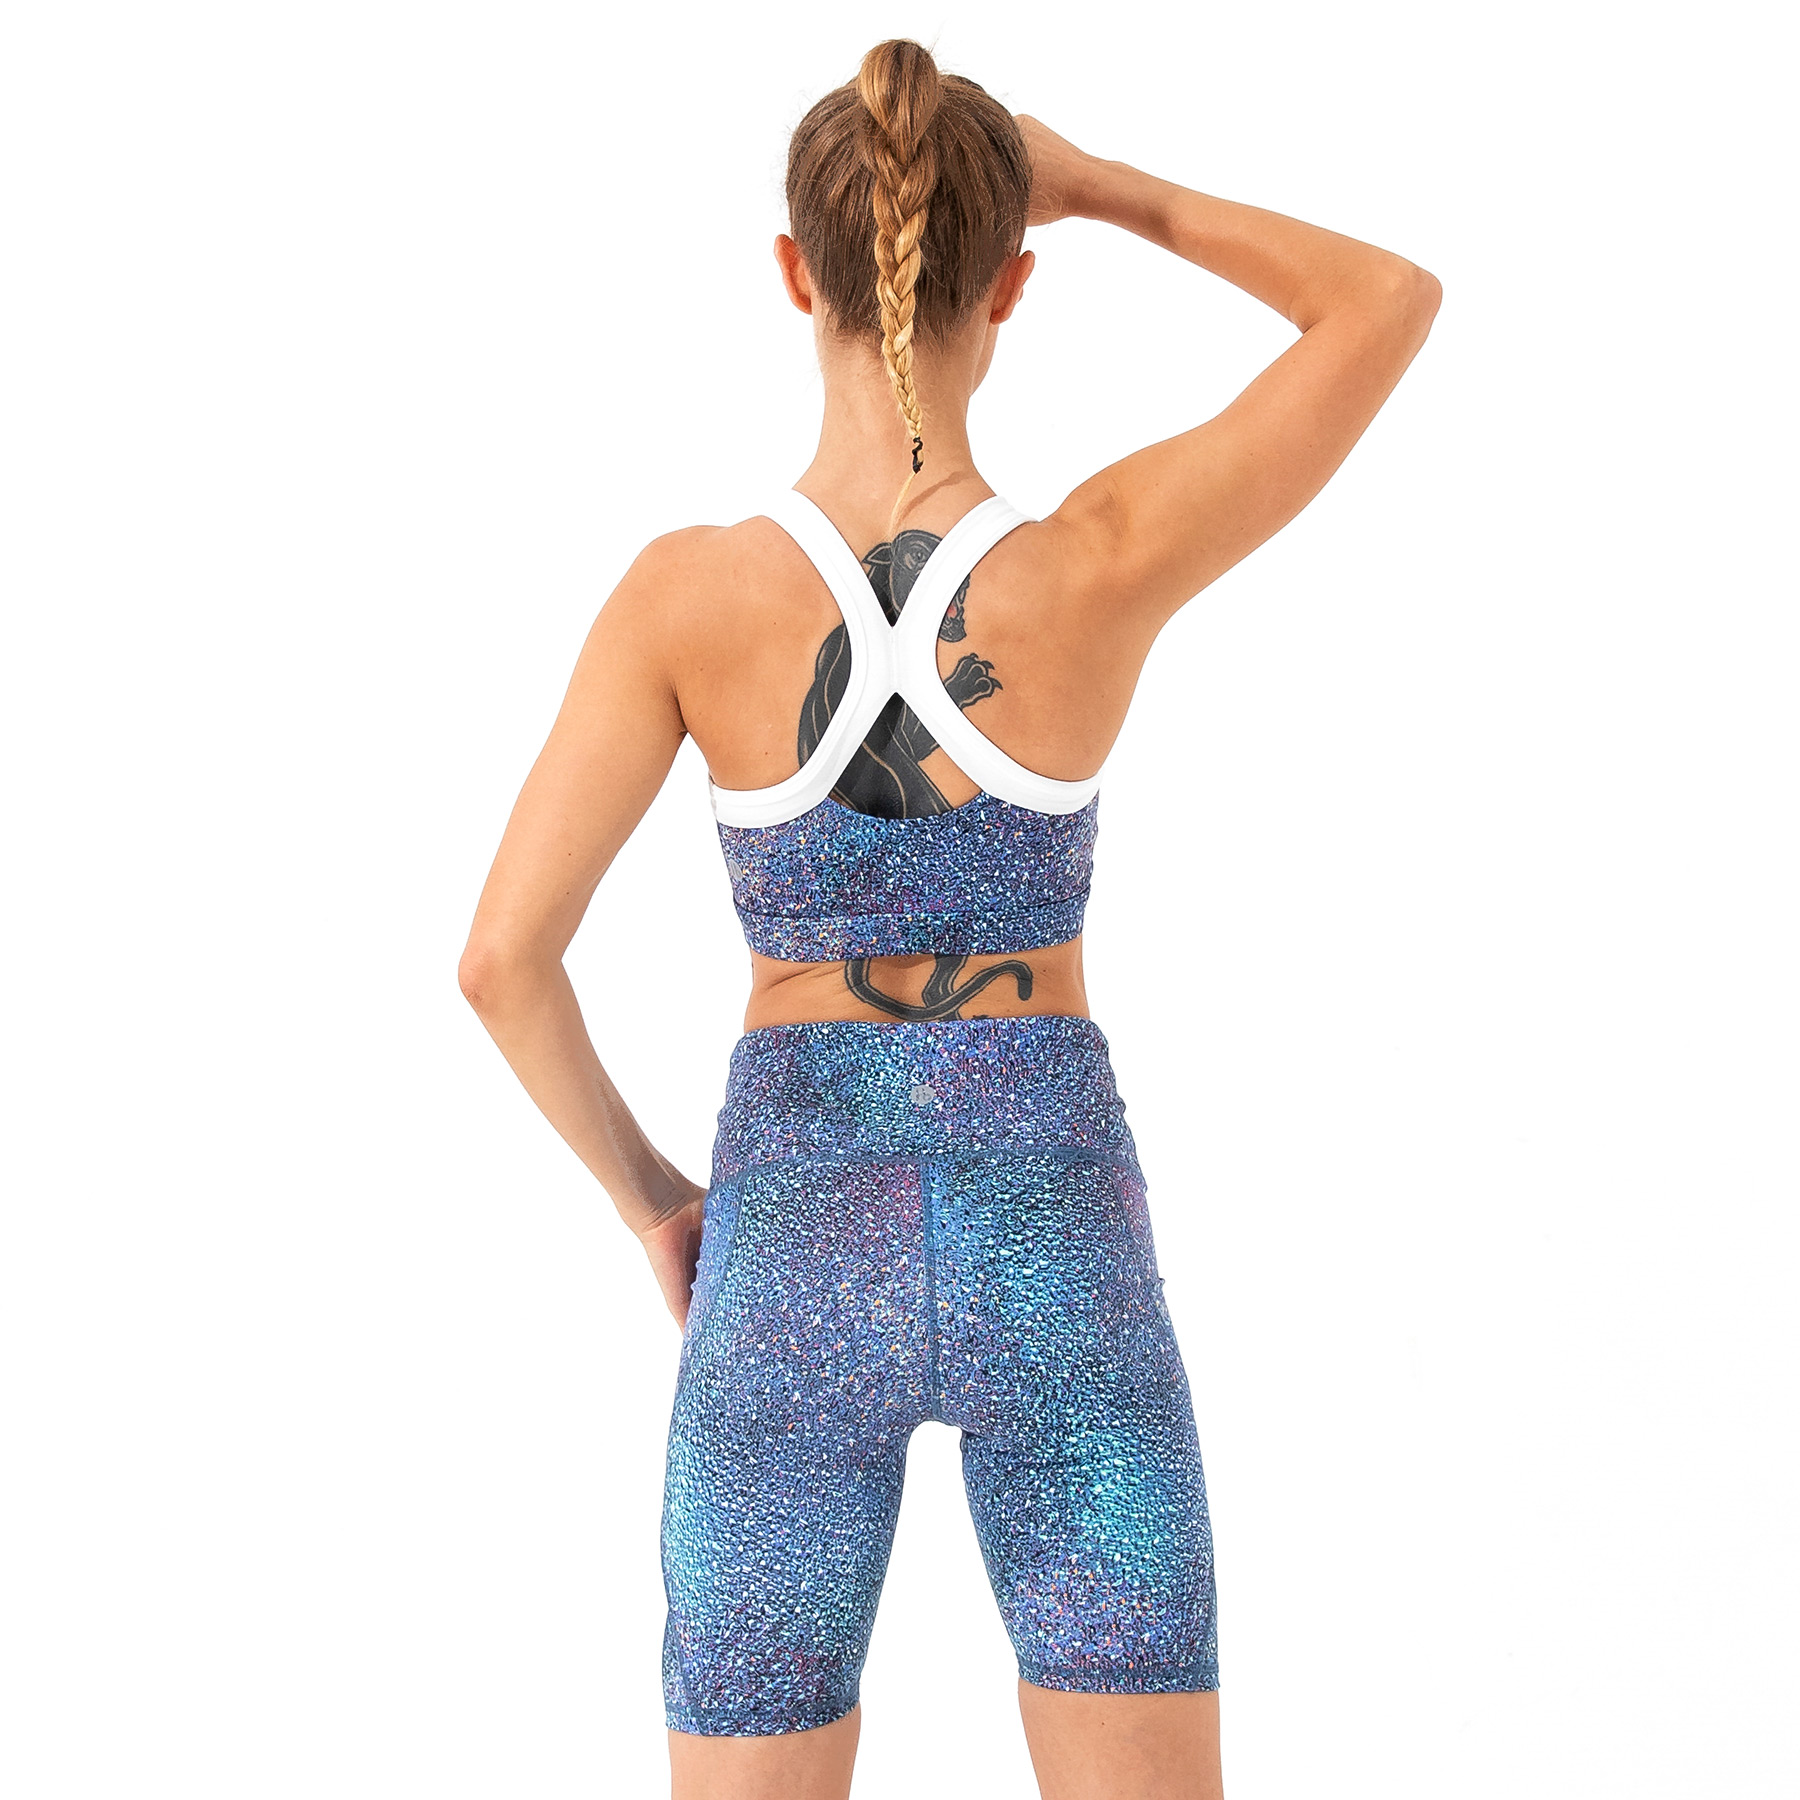 Set đồ tập Yoga Gym thiết kế cao cấp Hibi Sports H121 - Áo bra - Quần ngắn lưng cao tôn dáng - Kèm mút nâng ngực